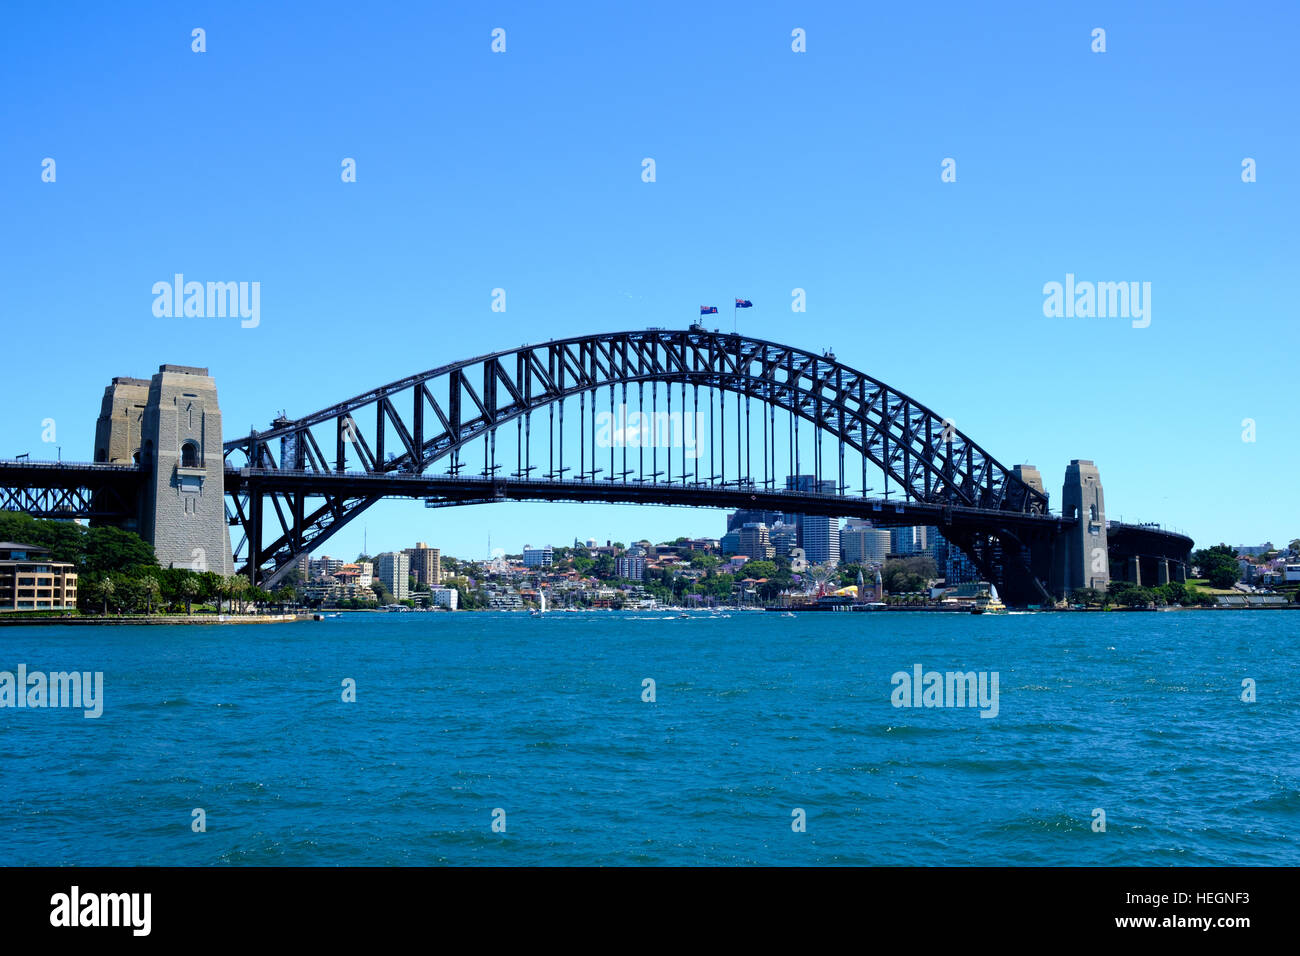 Sydney harbour bridge against a blue sky Stock Photo